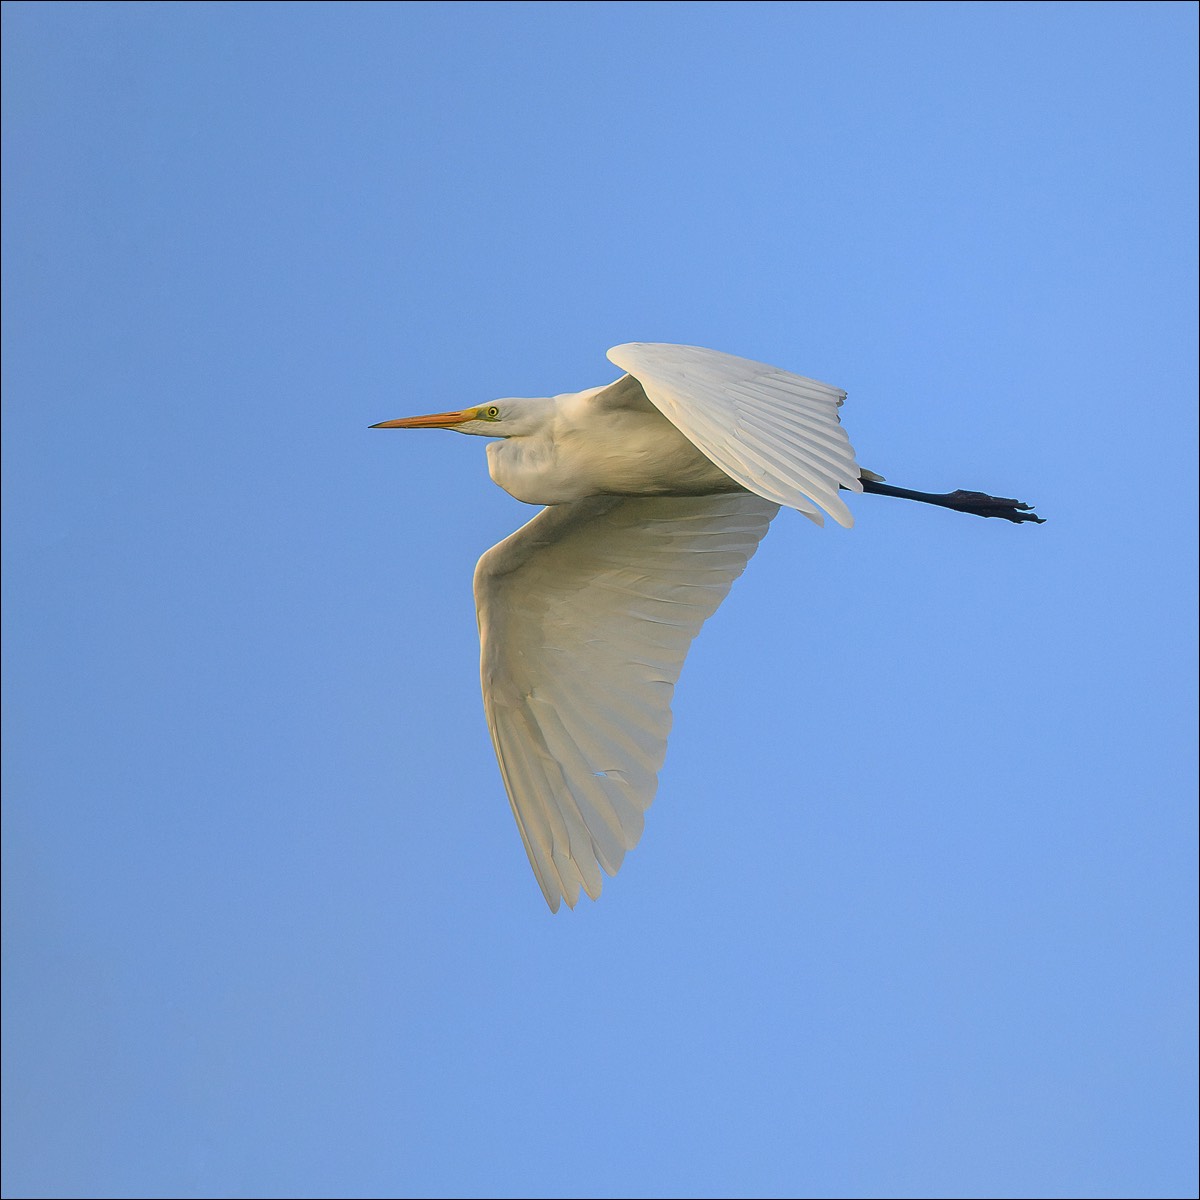 Great White Egret (Grote Zilverreiger) Uitkerke (Belgium) - 23/09/21